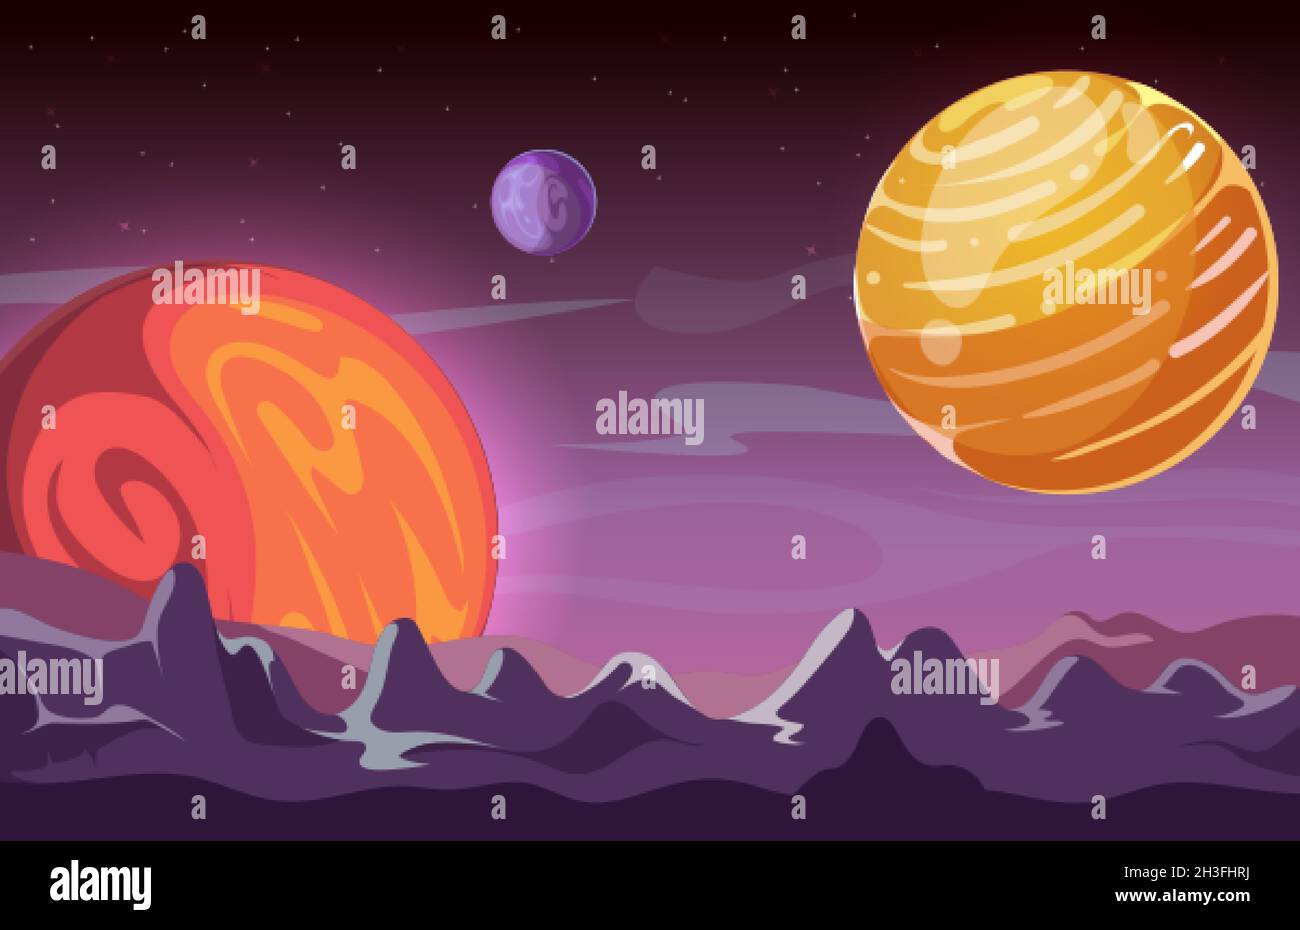 Hintergrund des Universums. Cartoon-Raum, Planeten im Kosmos. Spielort, mars oder mystische Welt Vektor Illustration Stock Vektor